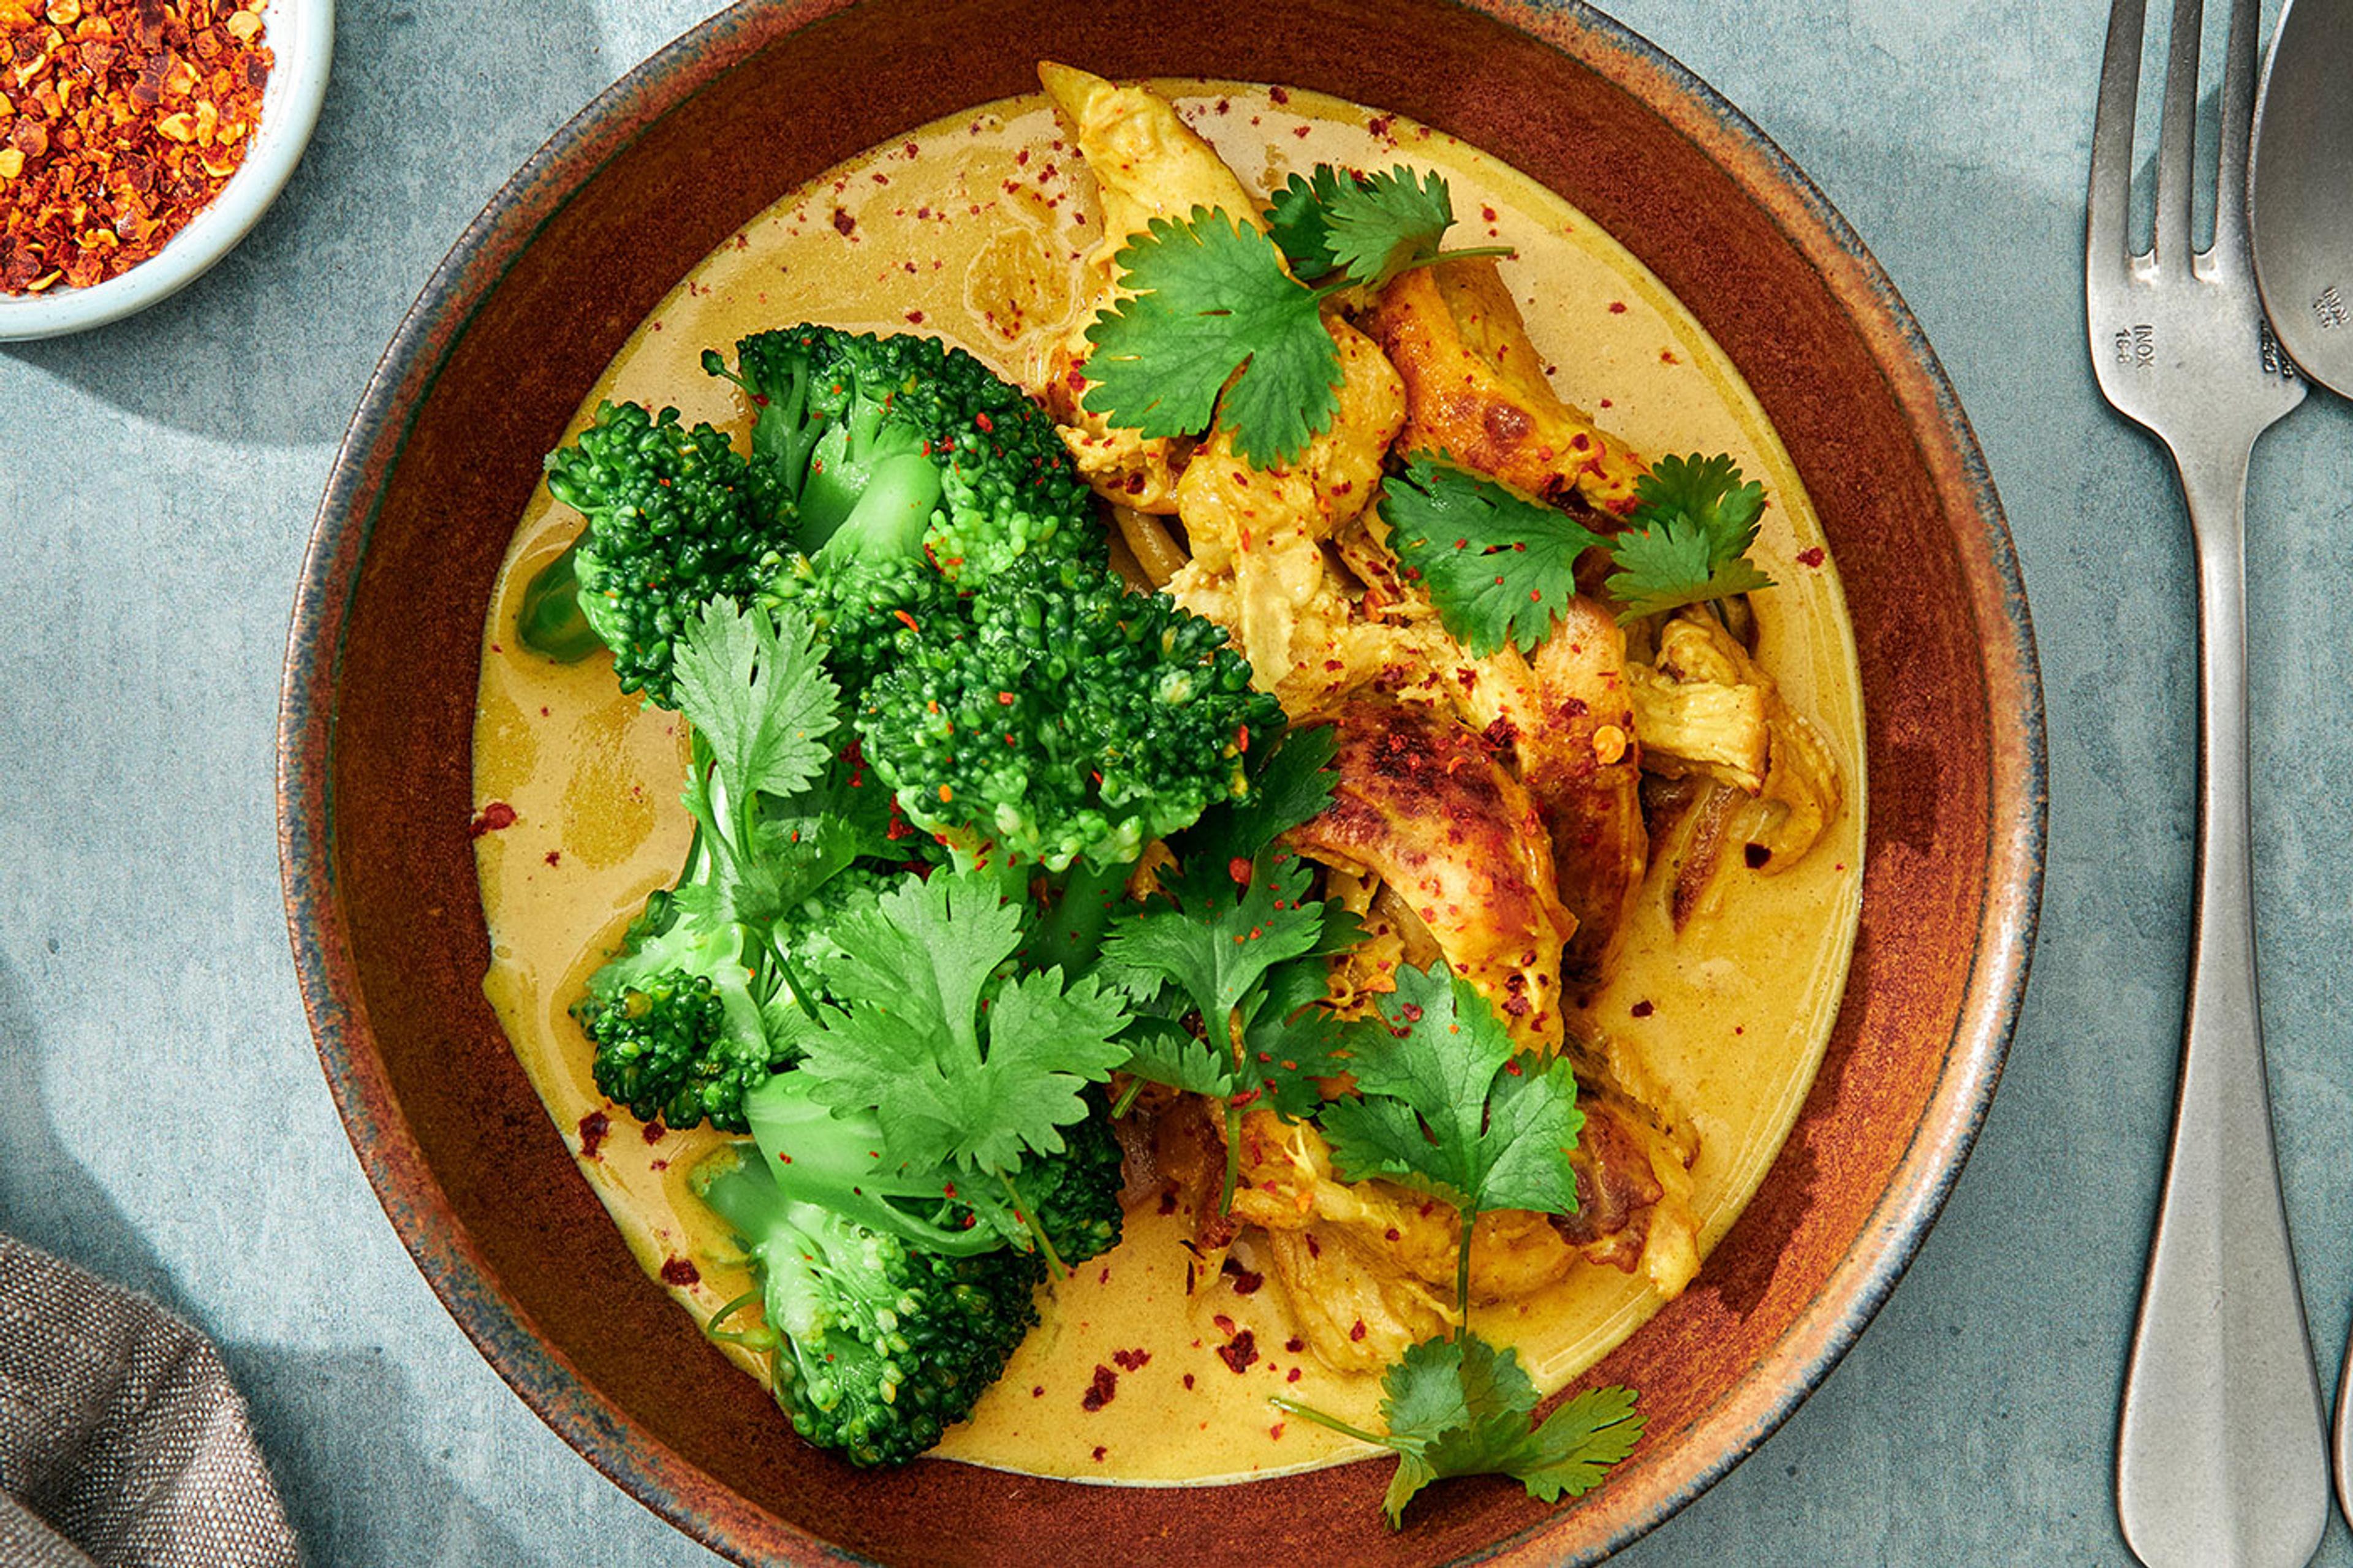 En djup tallrik med en gul kycklingcurry toppad med broccoli